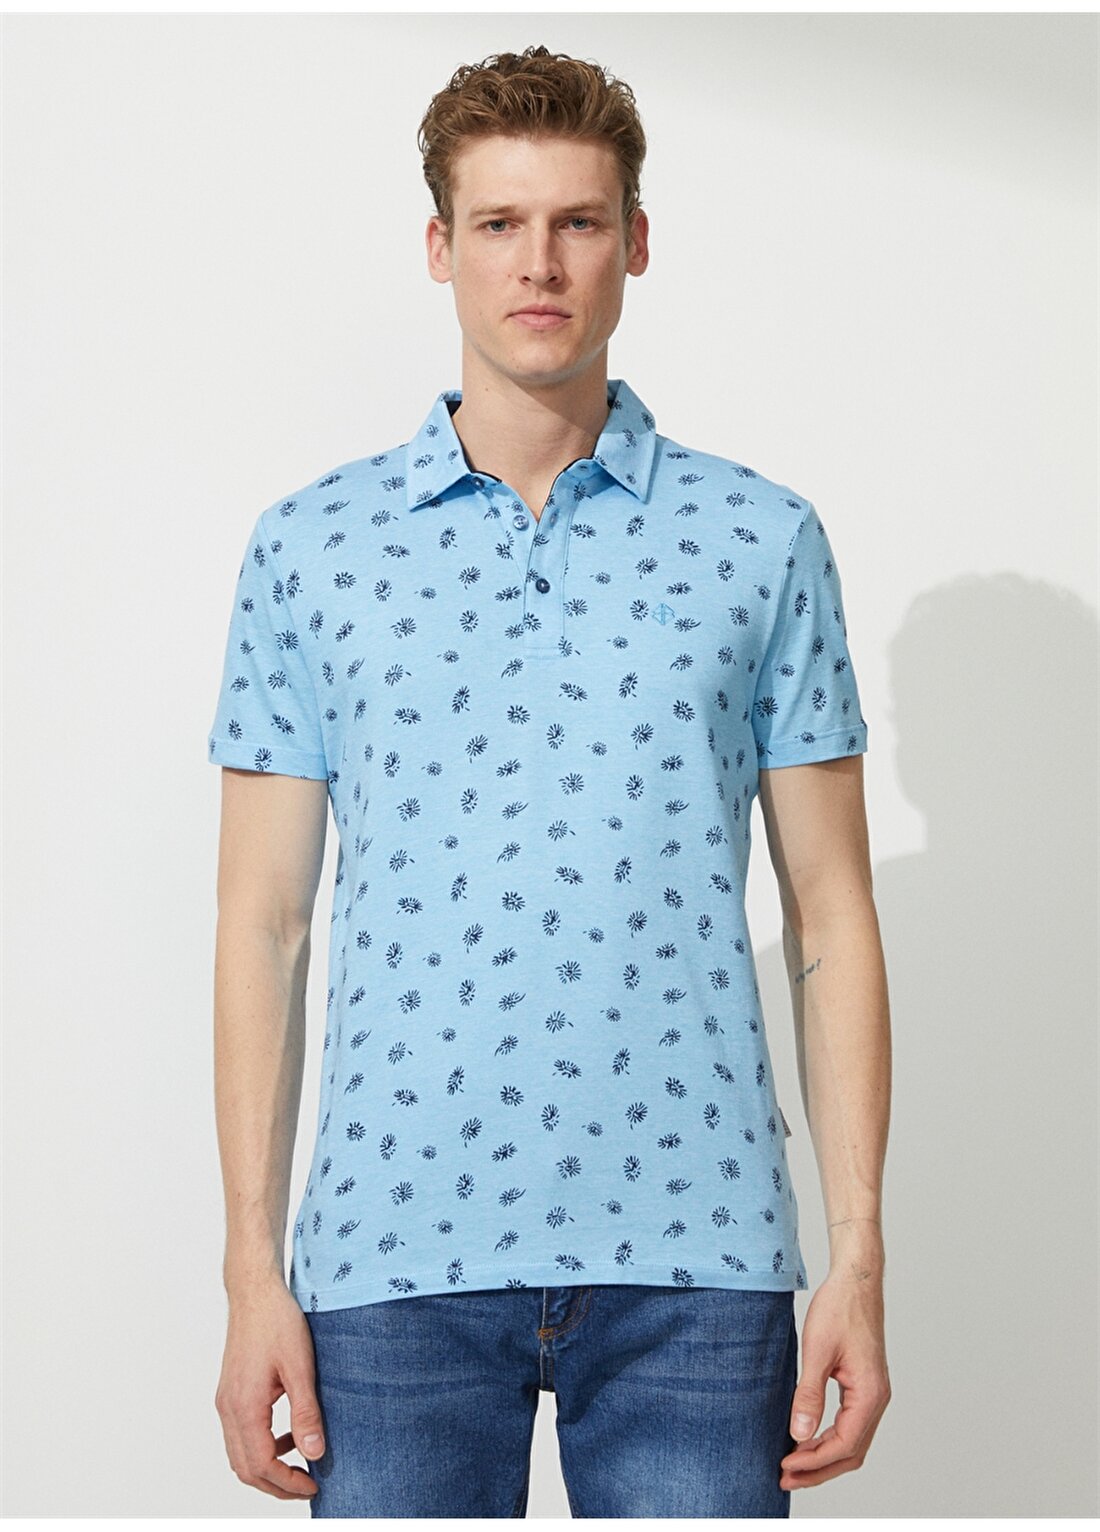 Beymen Business Polo Yaka Açık Mavi Erkek T-Shirt 4B4823200054